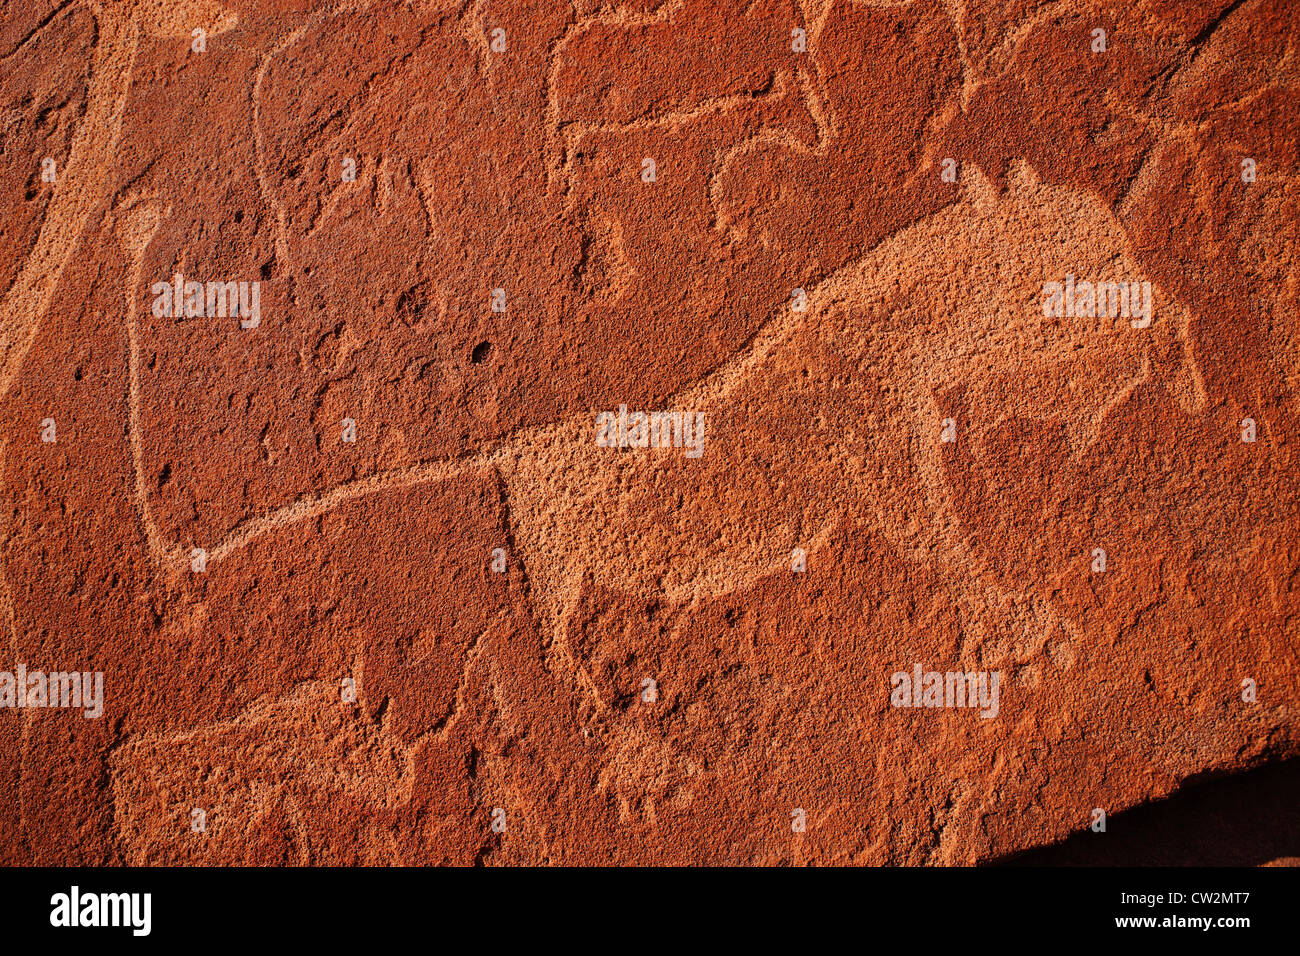 Twyfelfontein/ petroglifos grabados rupestres de León. Namibia Foto de stock